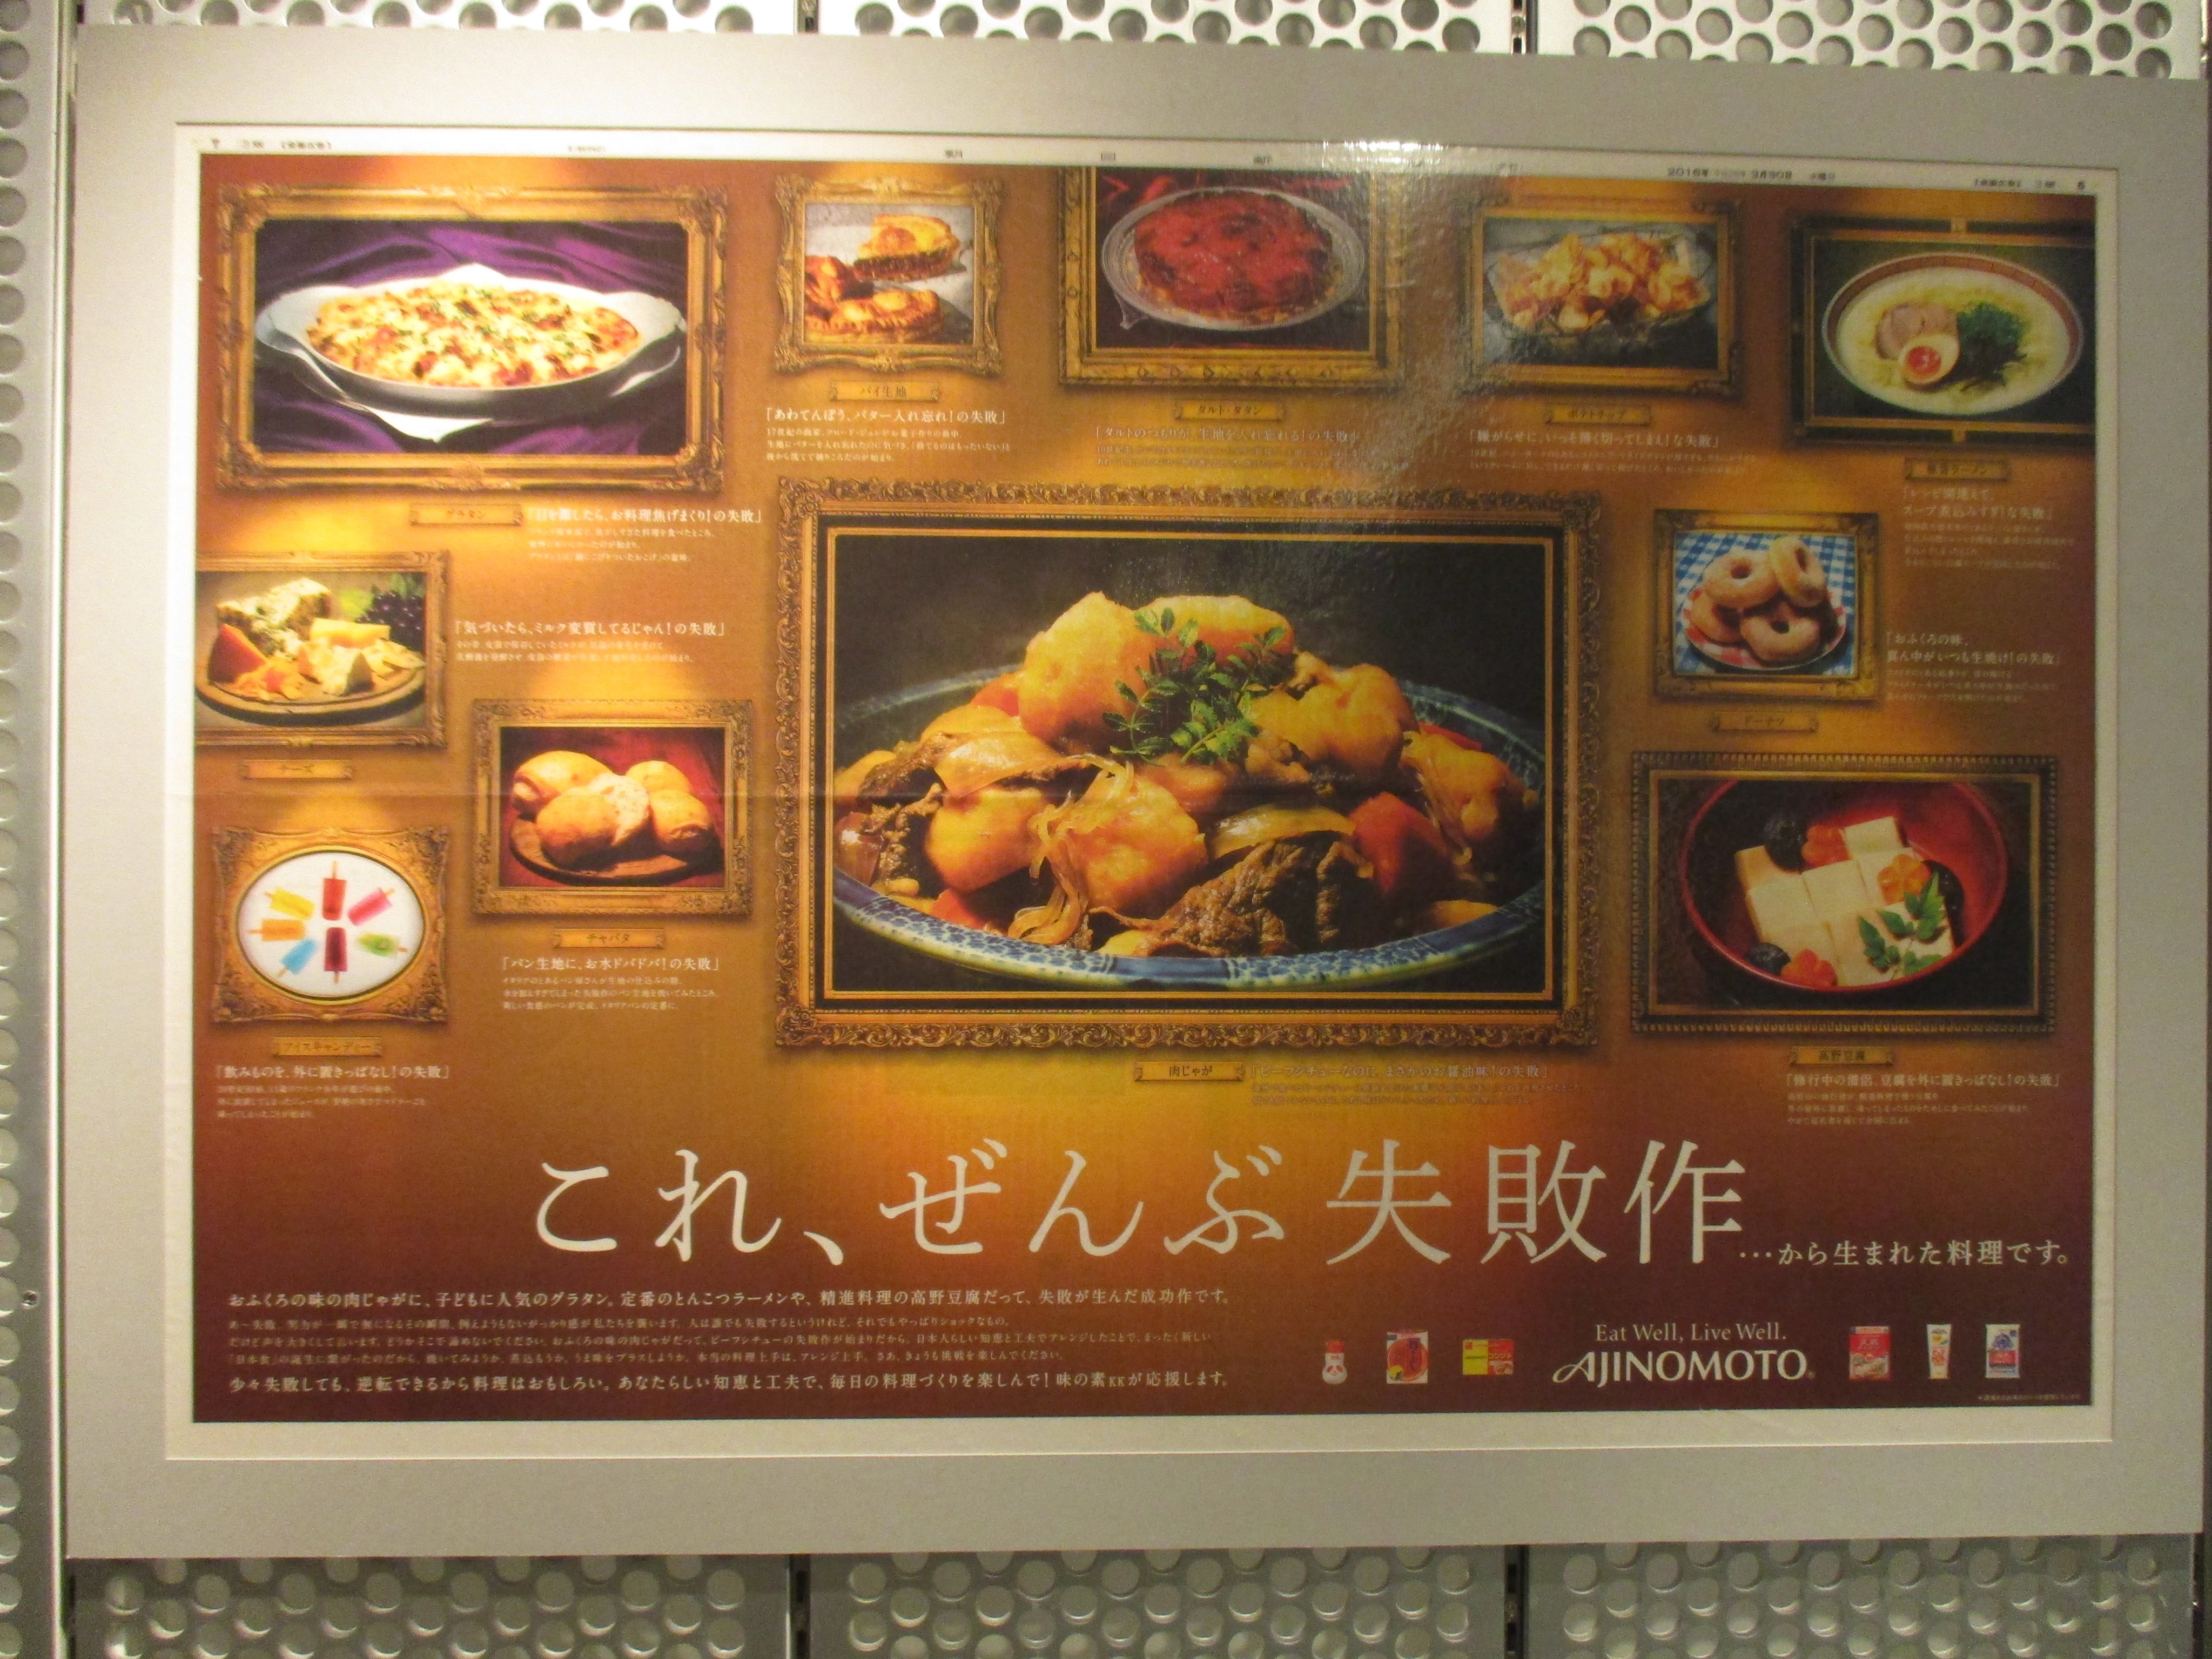 アドミュージアム東京 The Ad Museum Tokyo Twitter પર 第55回jaa広告賞消費者が選んだ広告コンクール展会場にて受賞作品 味の素 今普通に食卓に並べられている料理は実は失敗から生まれたそうですよ 少々 失敗しても料理は逆転できるから面白い まさに